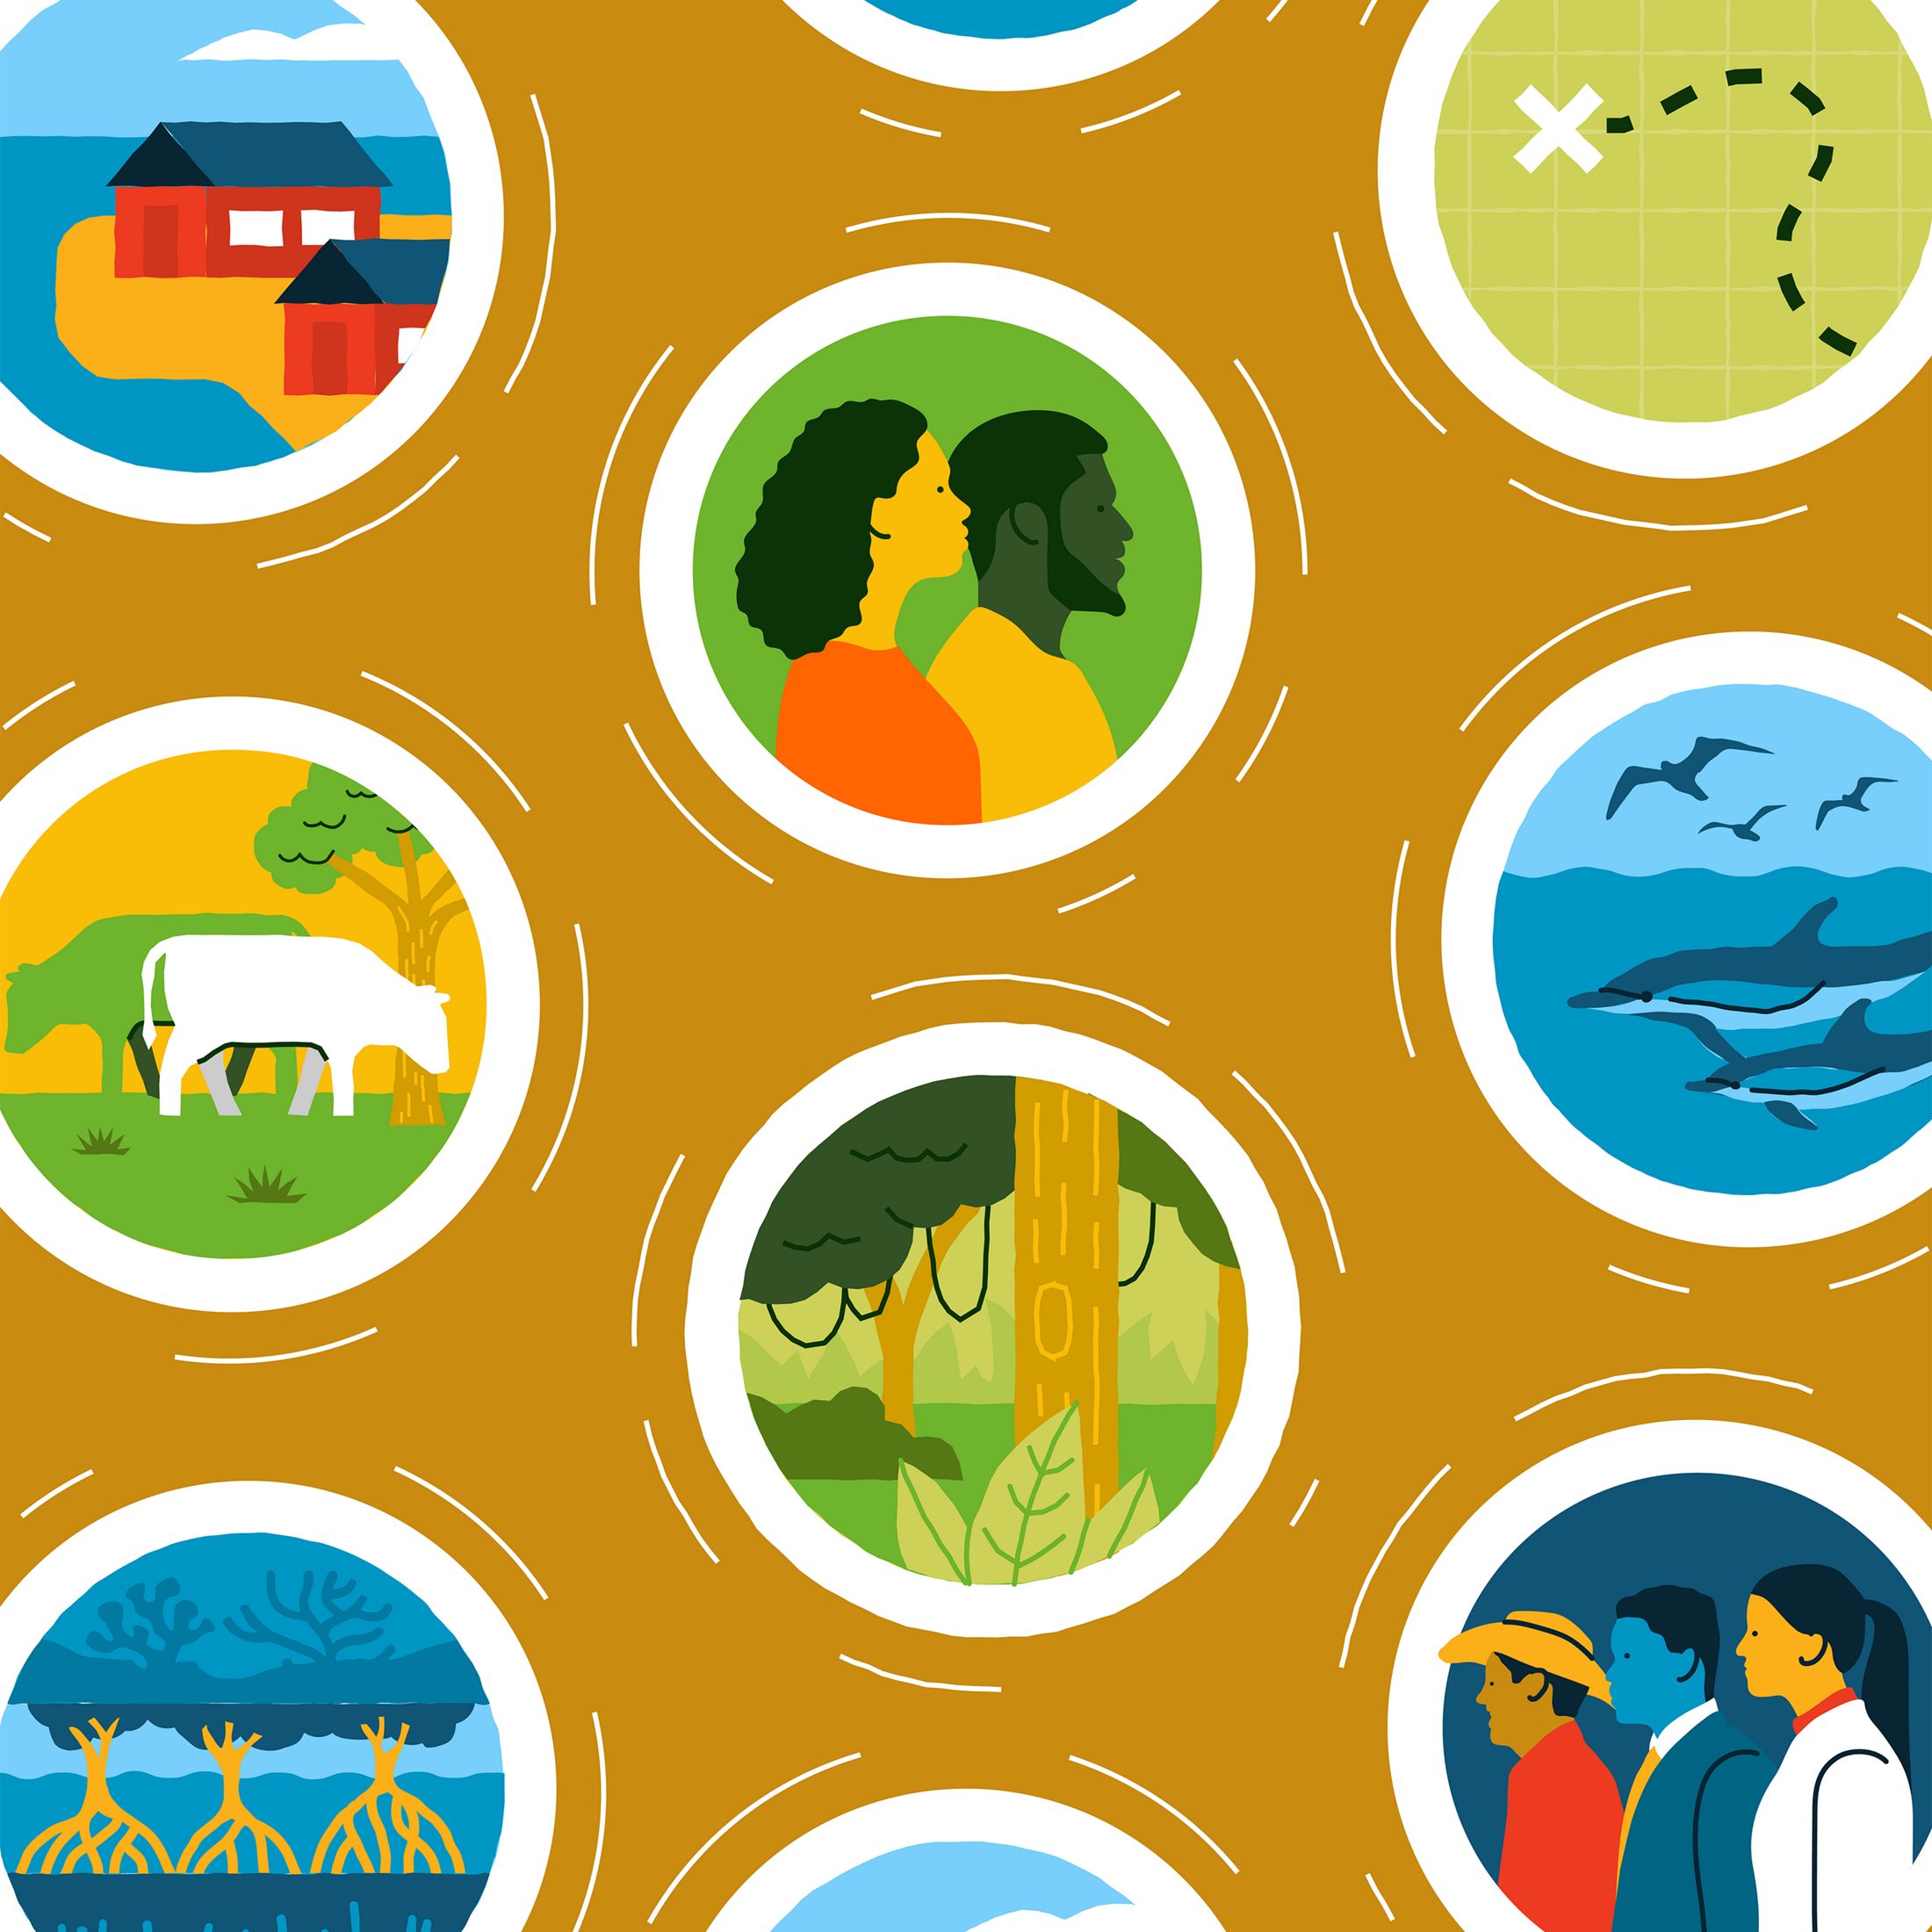 Ilustración con círculos que contienen imágenes de personas, selva, delfines, ganado, casas y manglares sobre un fondo amarillo mostaza.